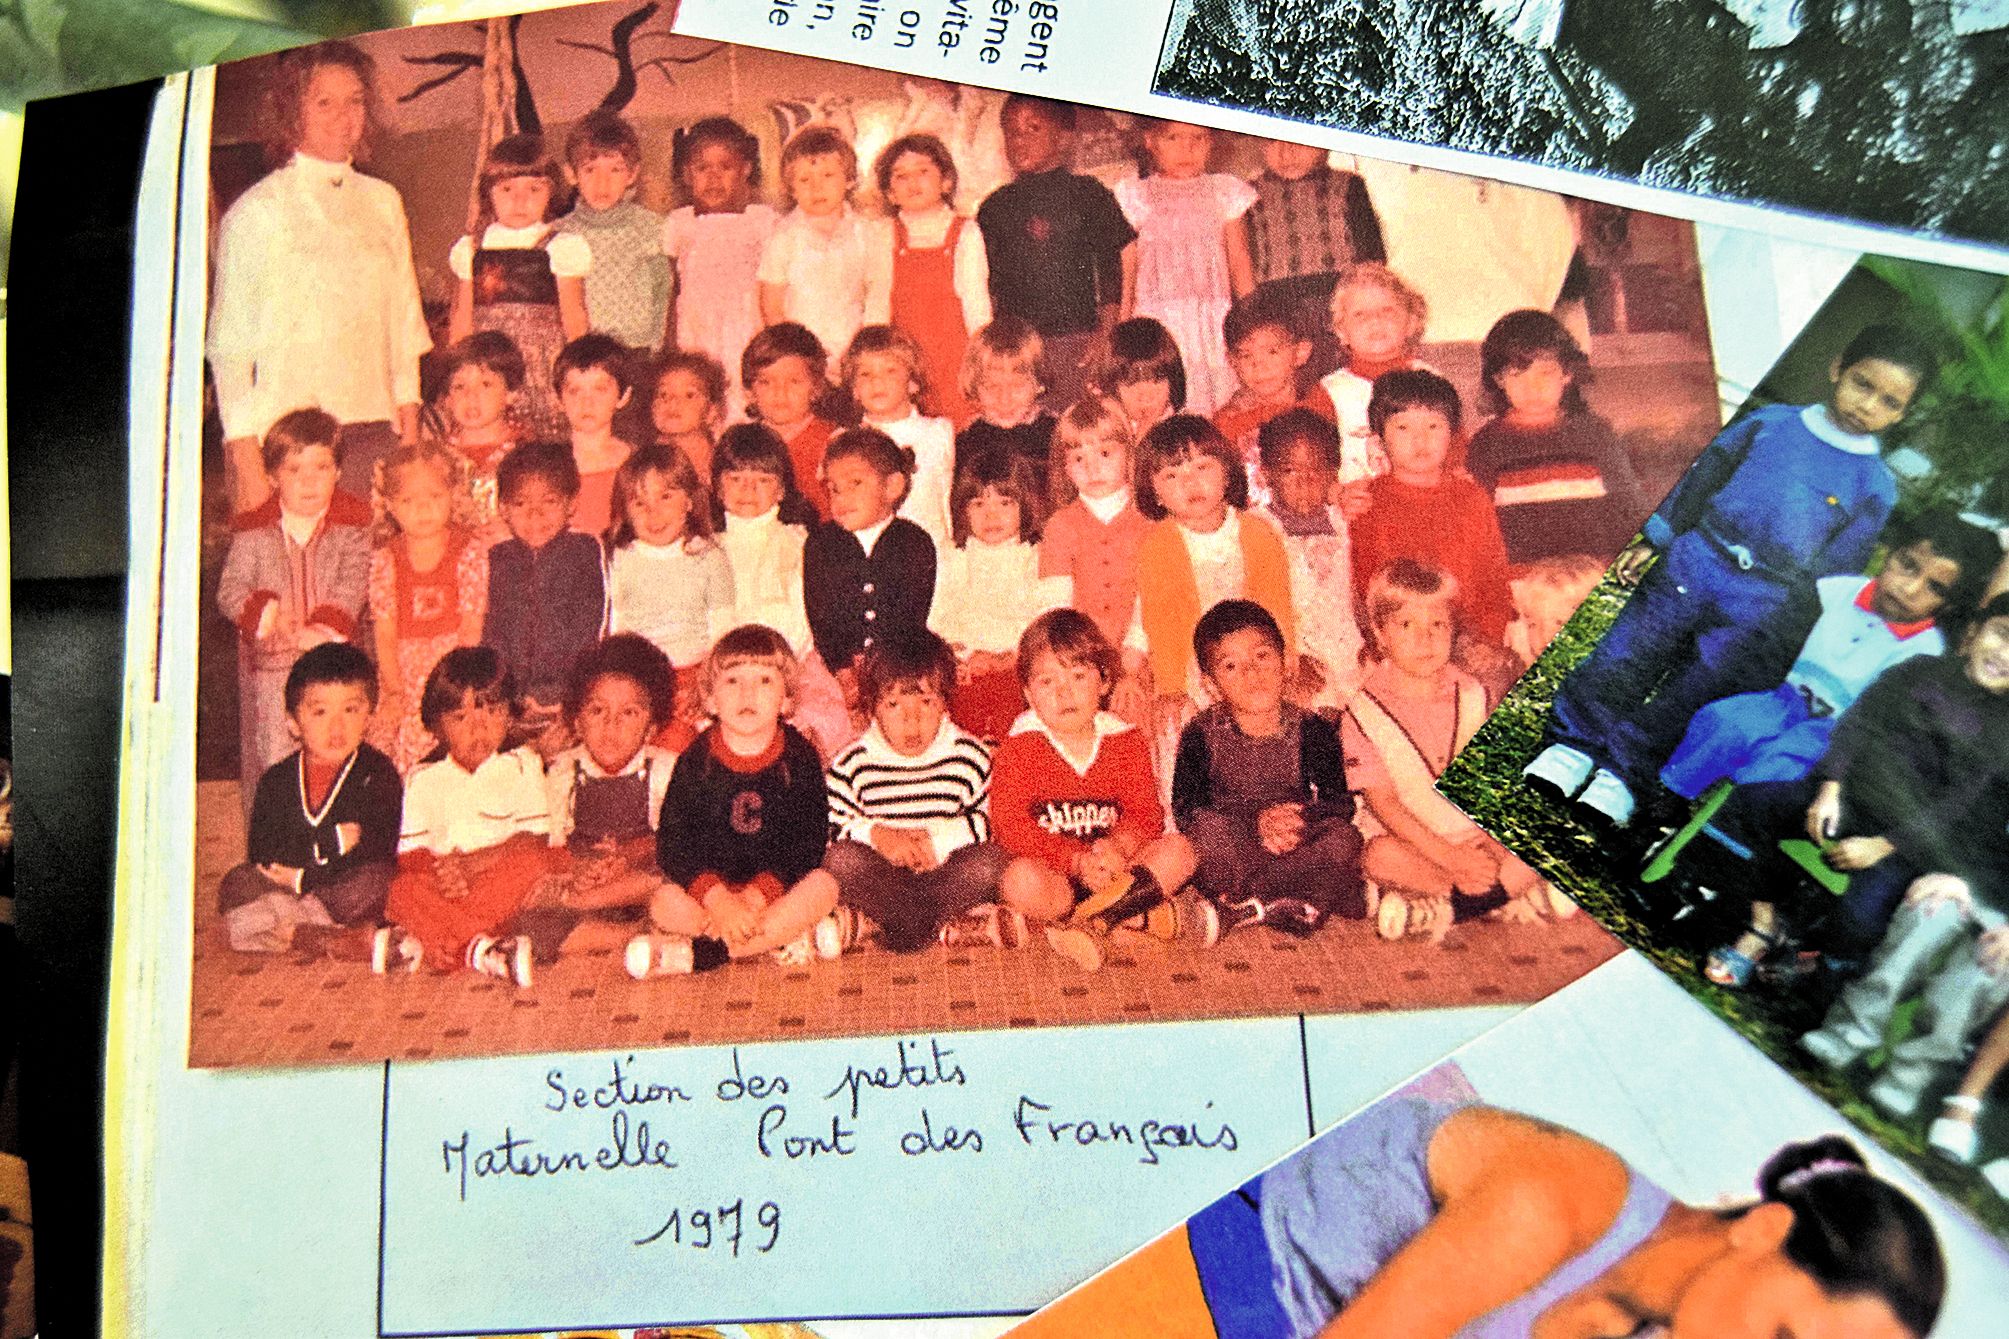 Un tableau en forme de 40 ans affichait de nombreuses photos de classe, comme celle-ci, datant de 1979 et représentant la section des petits. Photo DR